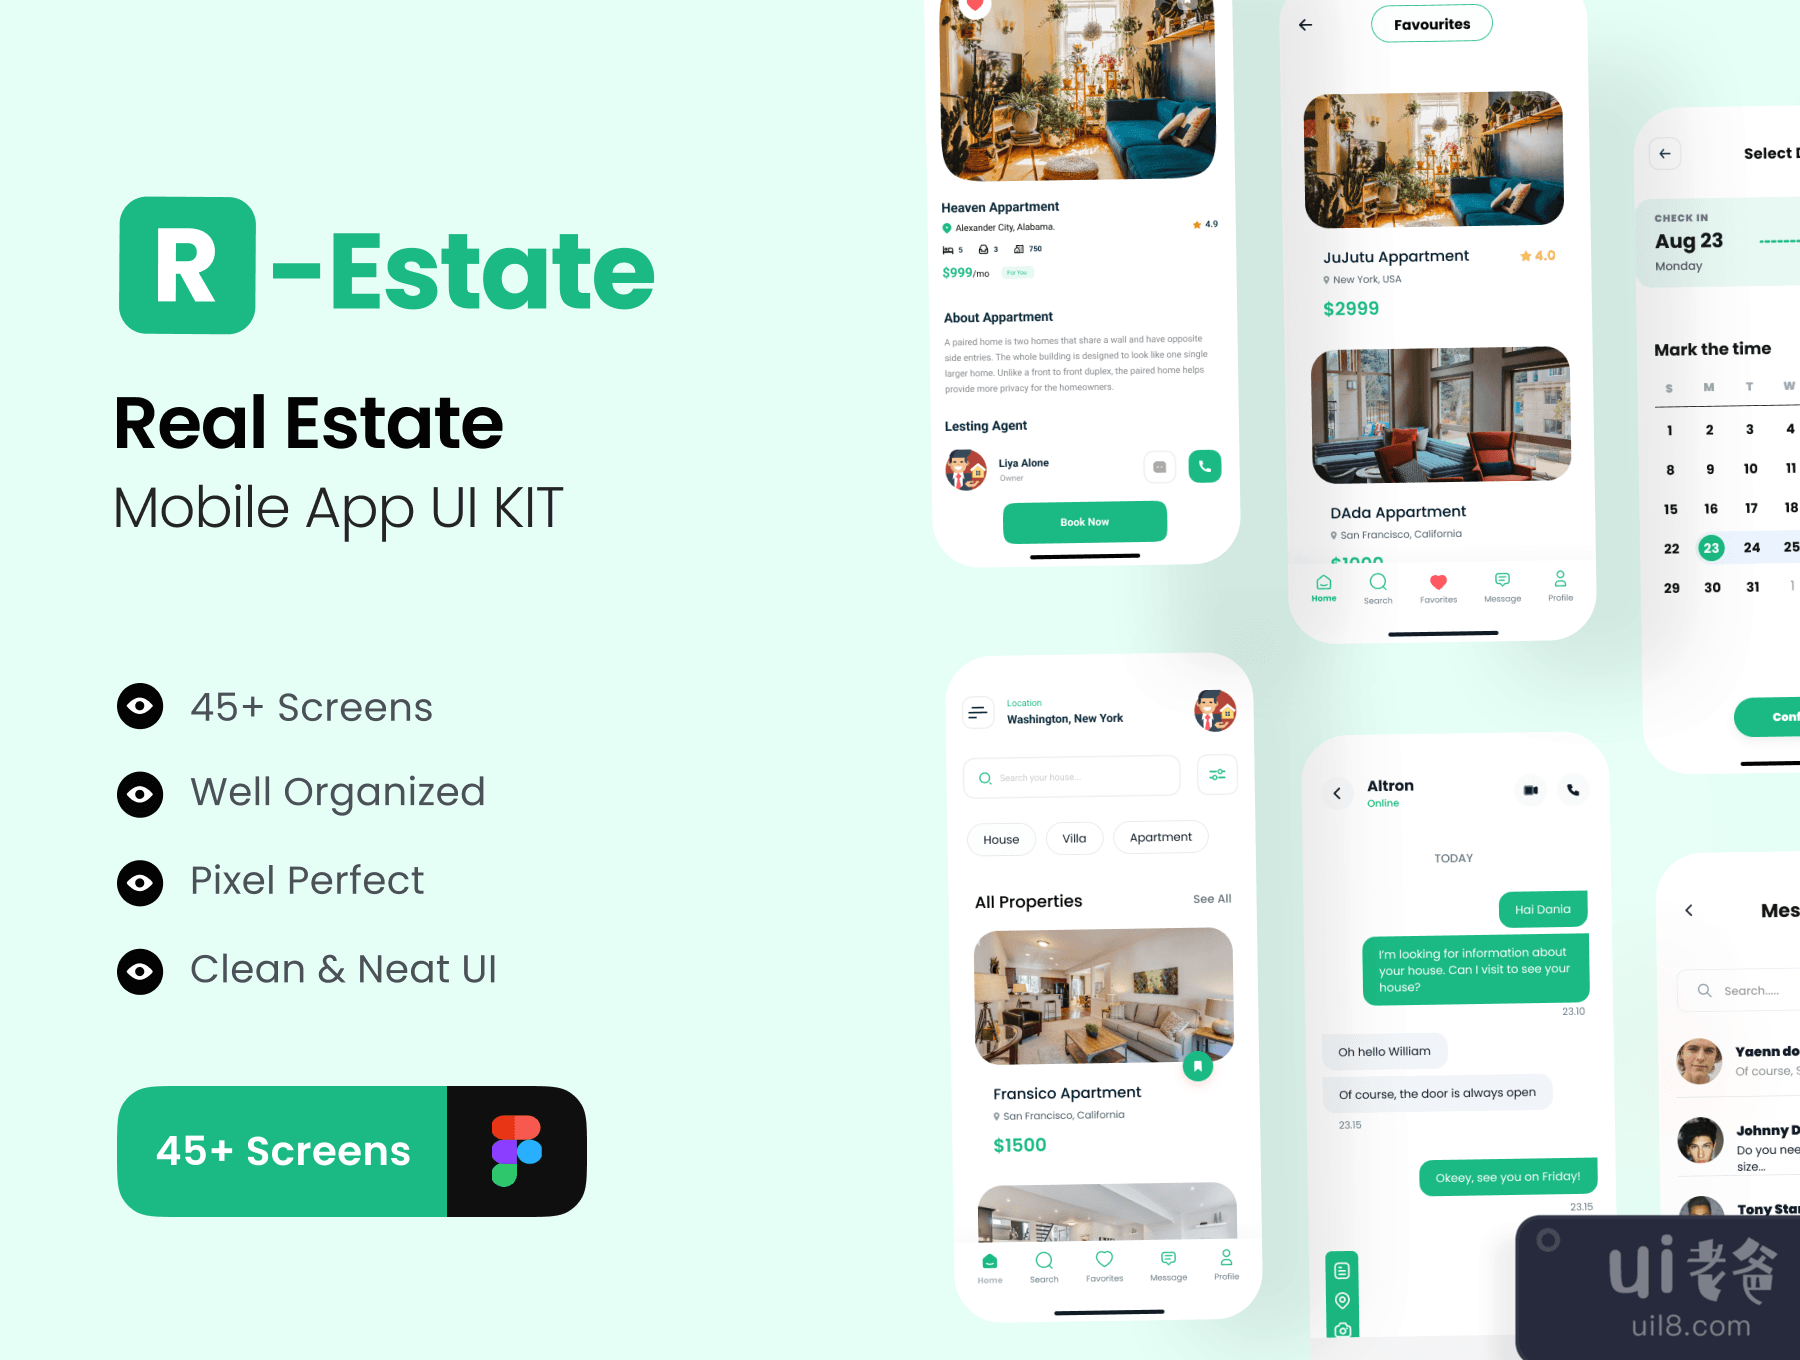 R-Estate - 房地产应用UI包 (R-Estate - Real Estate App UI Kit)插图